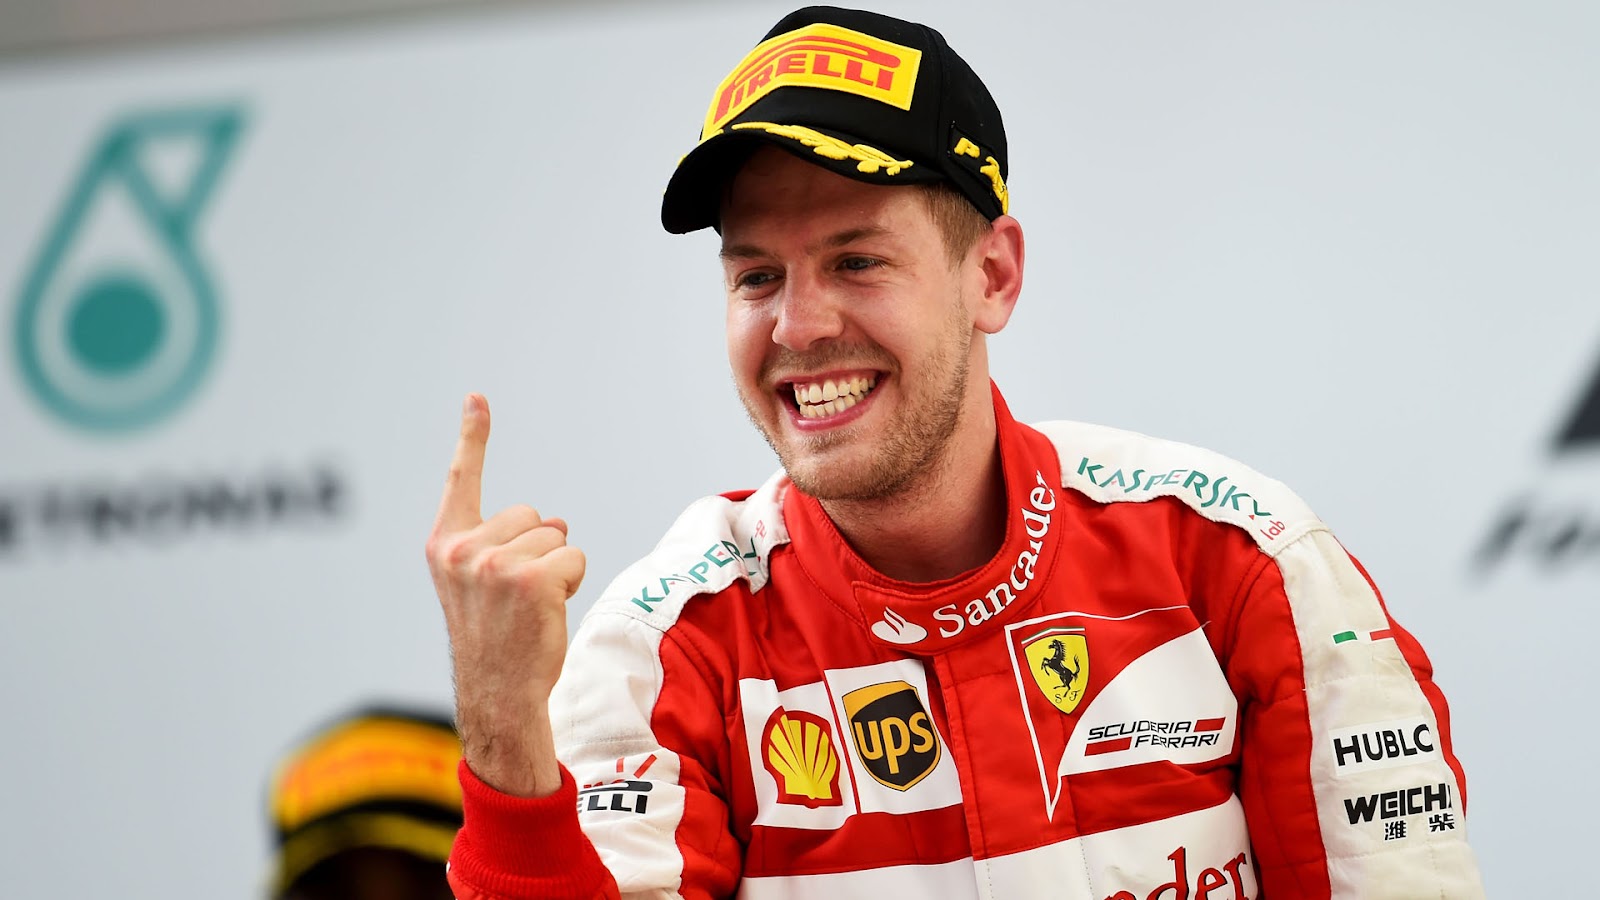 Vettel doing his trademark one finger victory salute